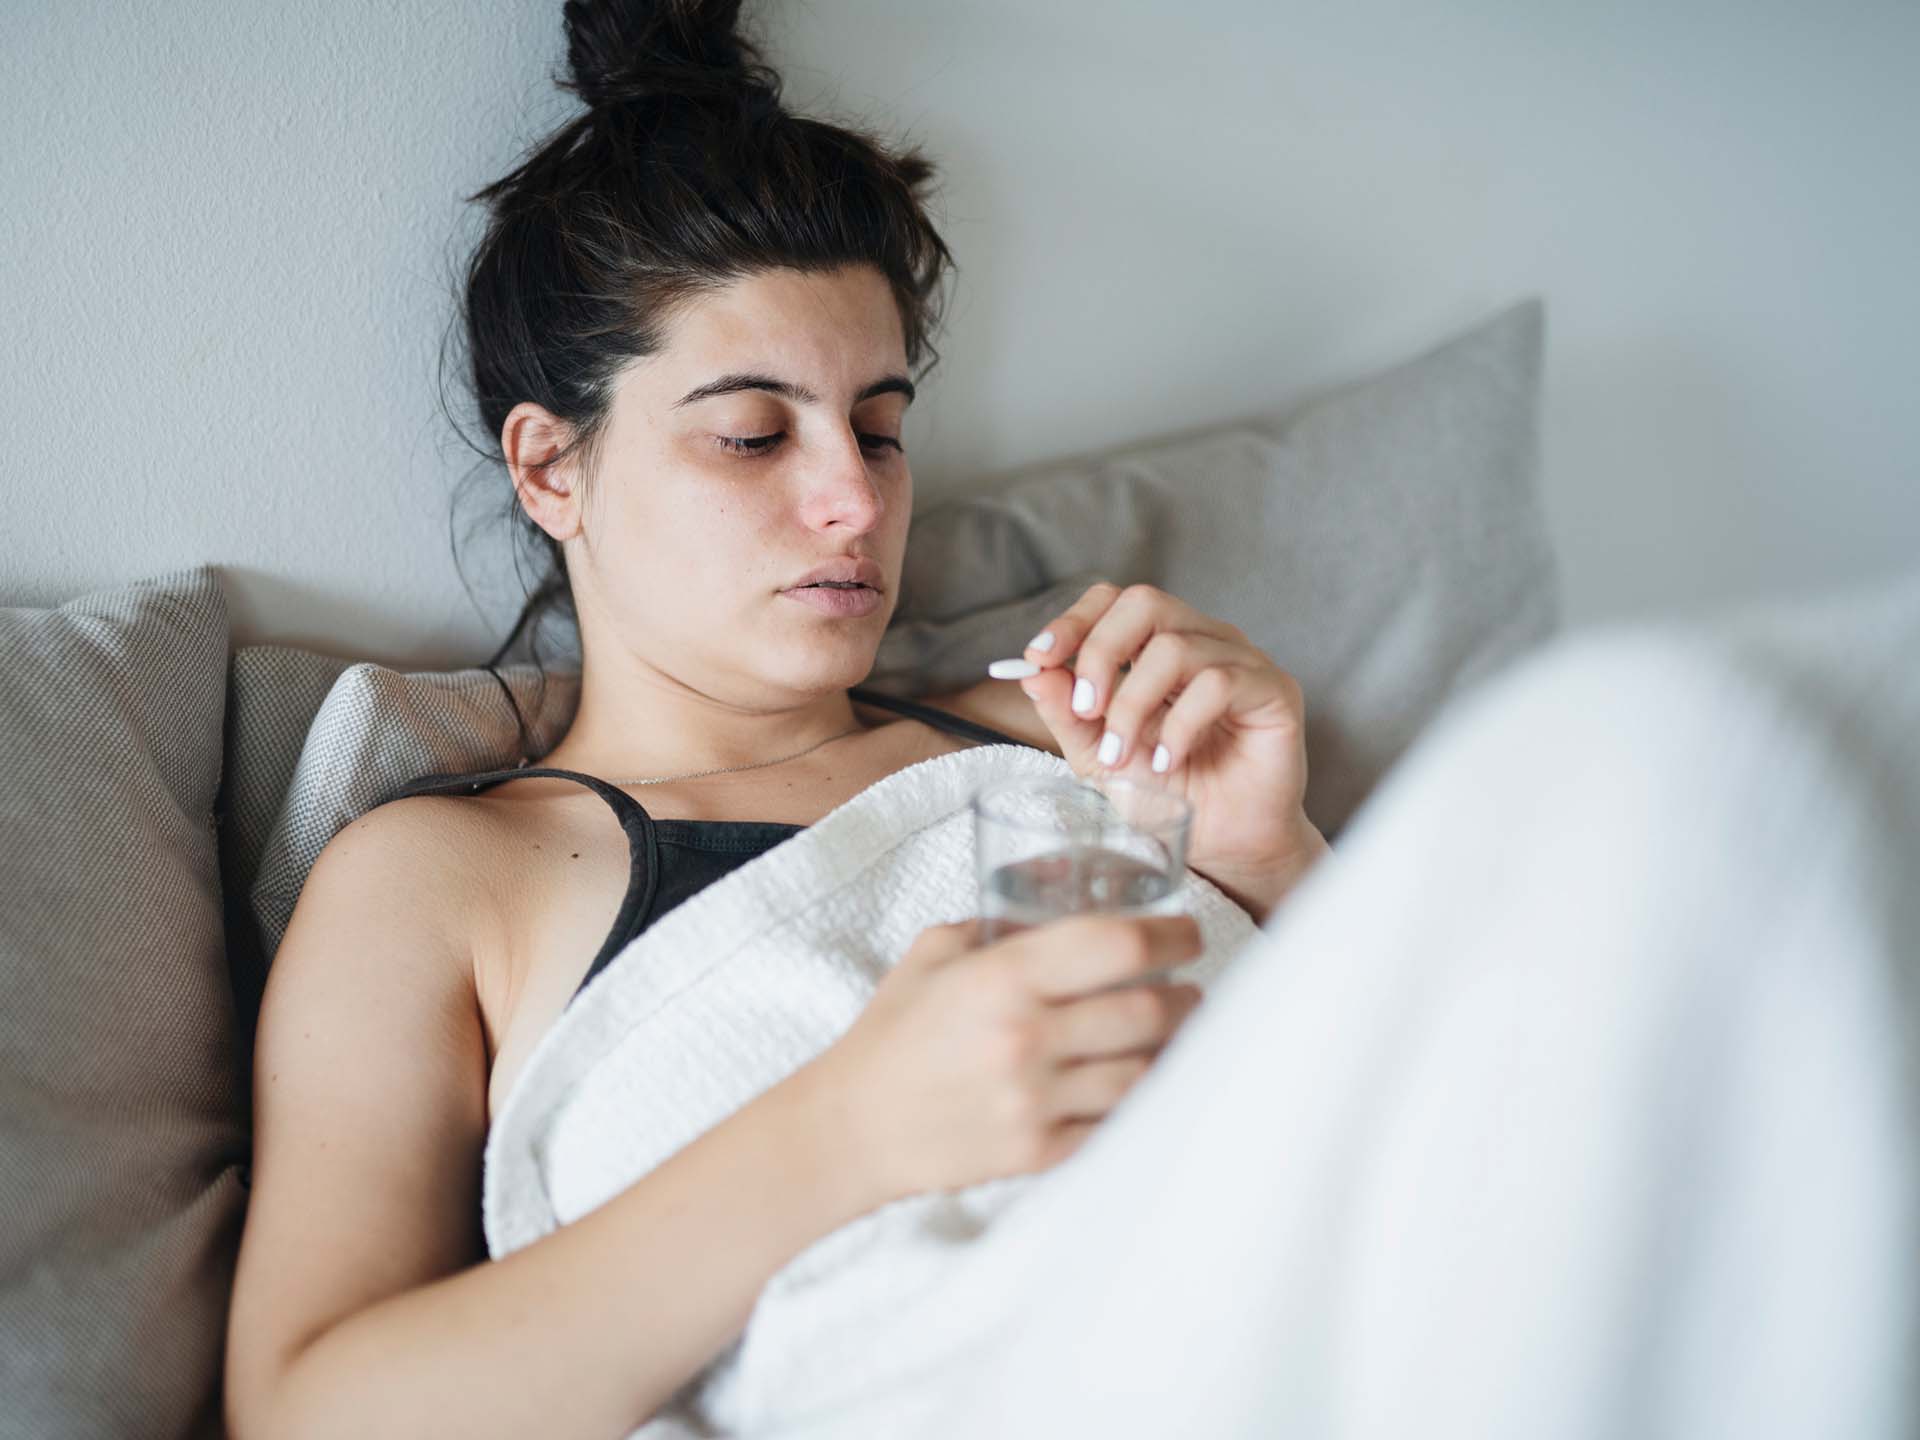 Junge Frau mit Kopfschmerzen sitzt im Bett und schaut eine Tablette an. Thema chronische Migräne